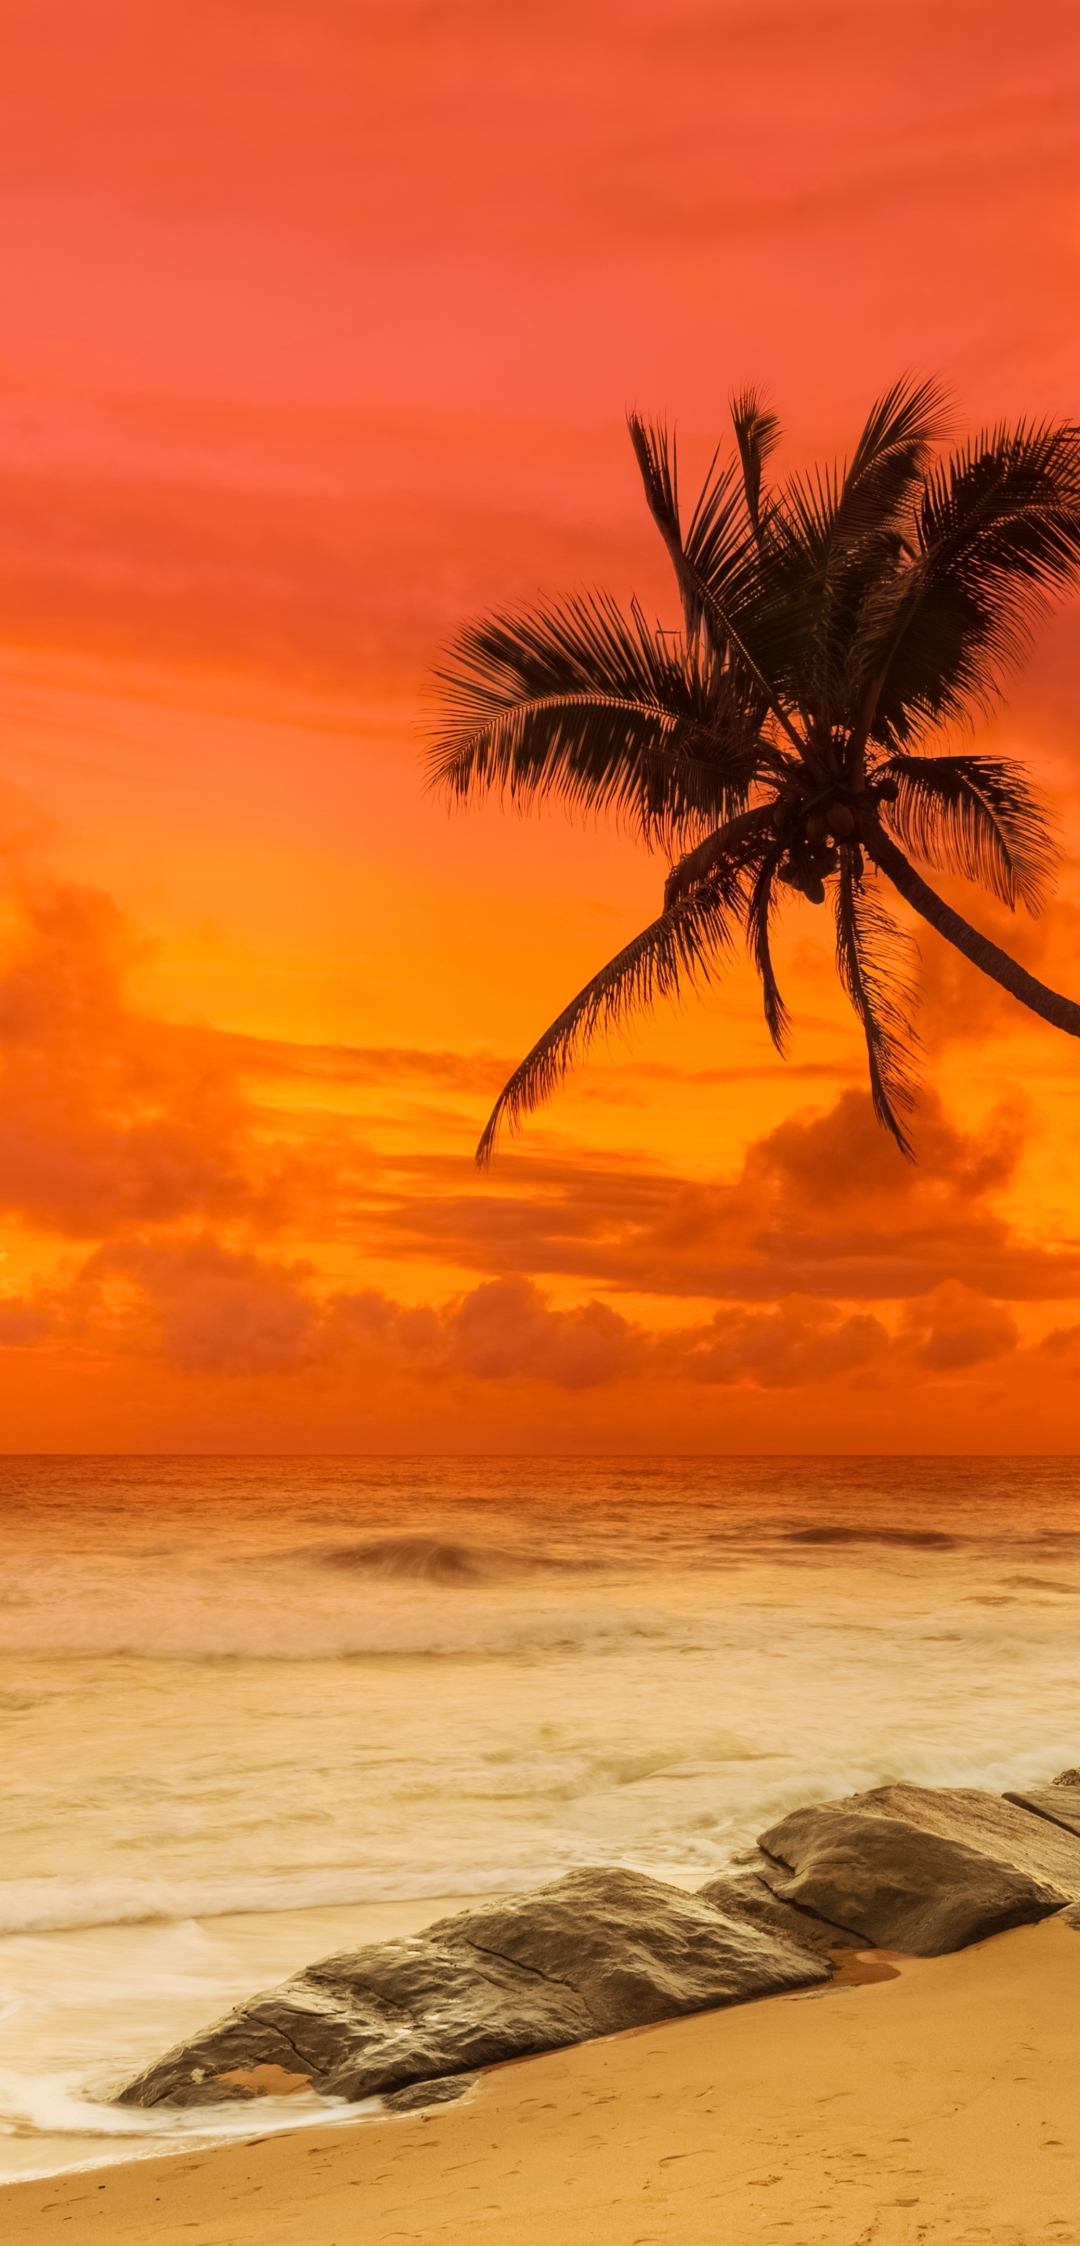 Descarga gratuita de fondo de pantalla para móvil de Playa, Océano, Tropical, Atardecer, Tierra/naturaleza, Tropico.